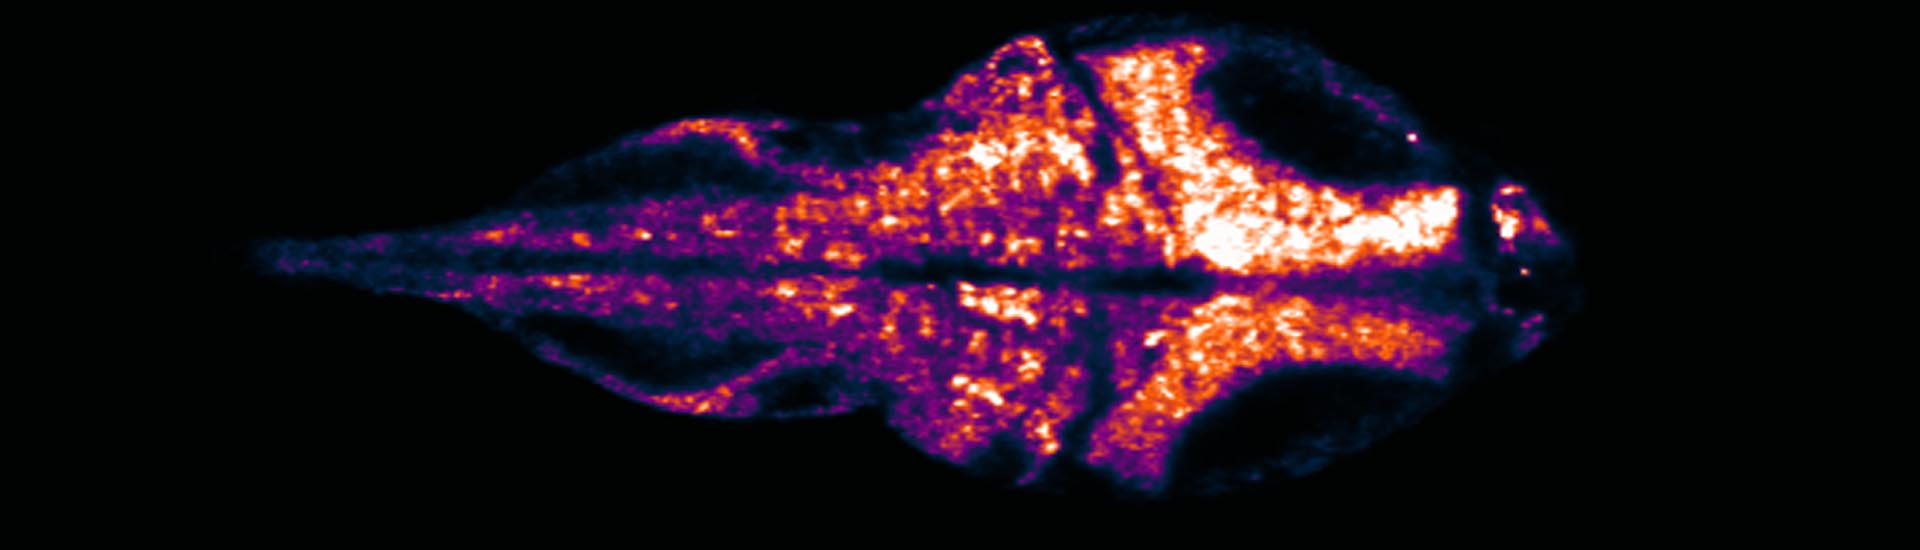 自由行为斑马鱼的全脑功能光学成像